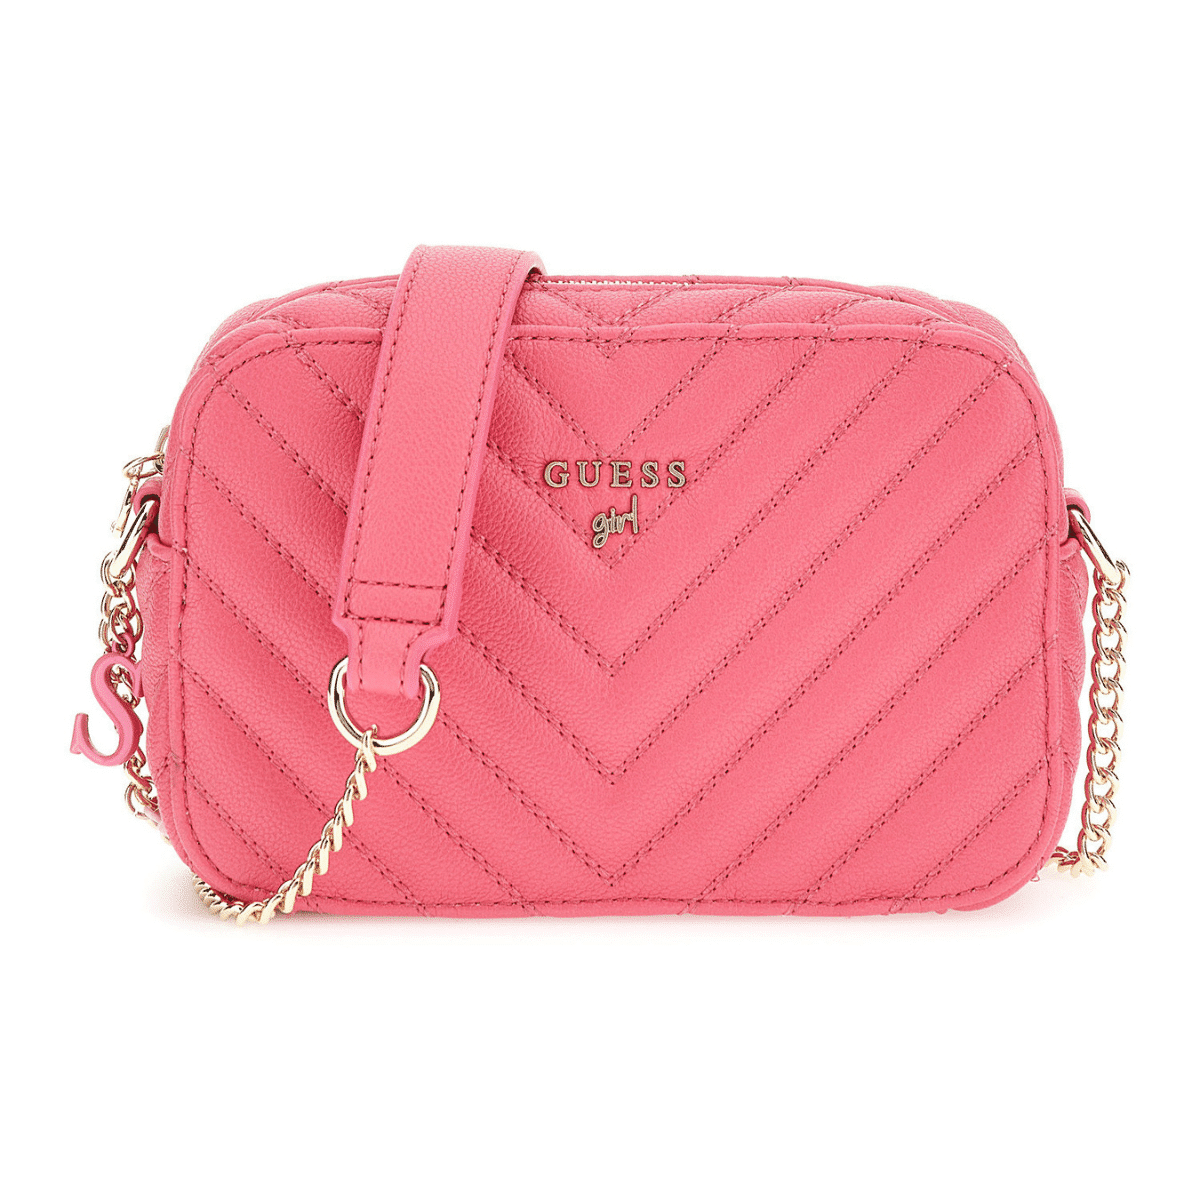 guess girl pink handbag with gold strap